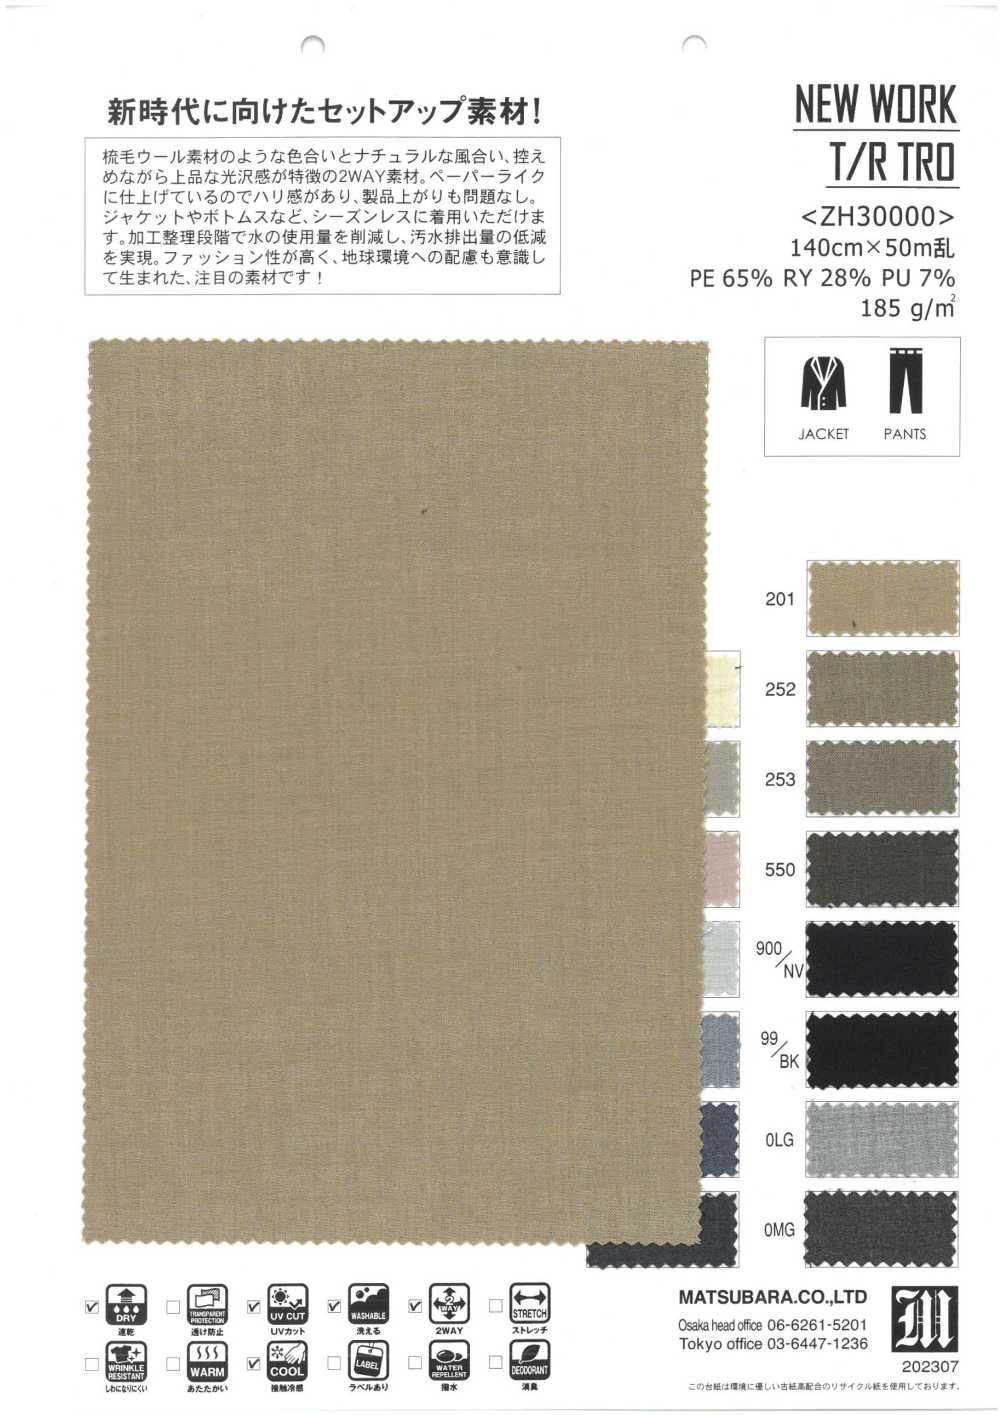 ZH30000 OBRA NUEVA T/R TRO[Fabrica Textil] Matsubara